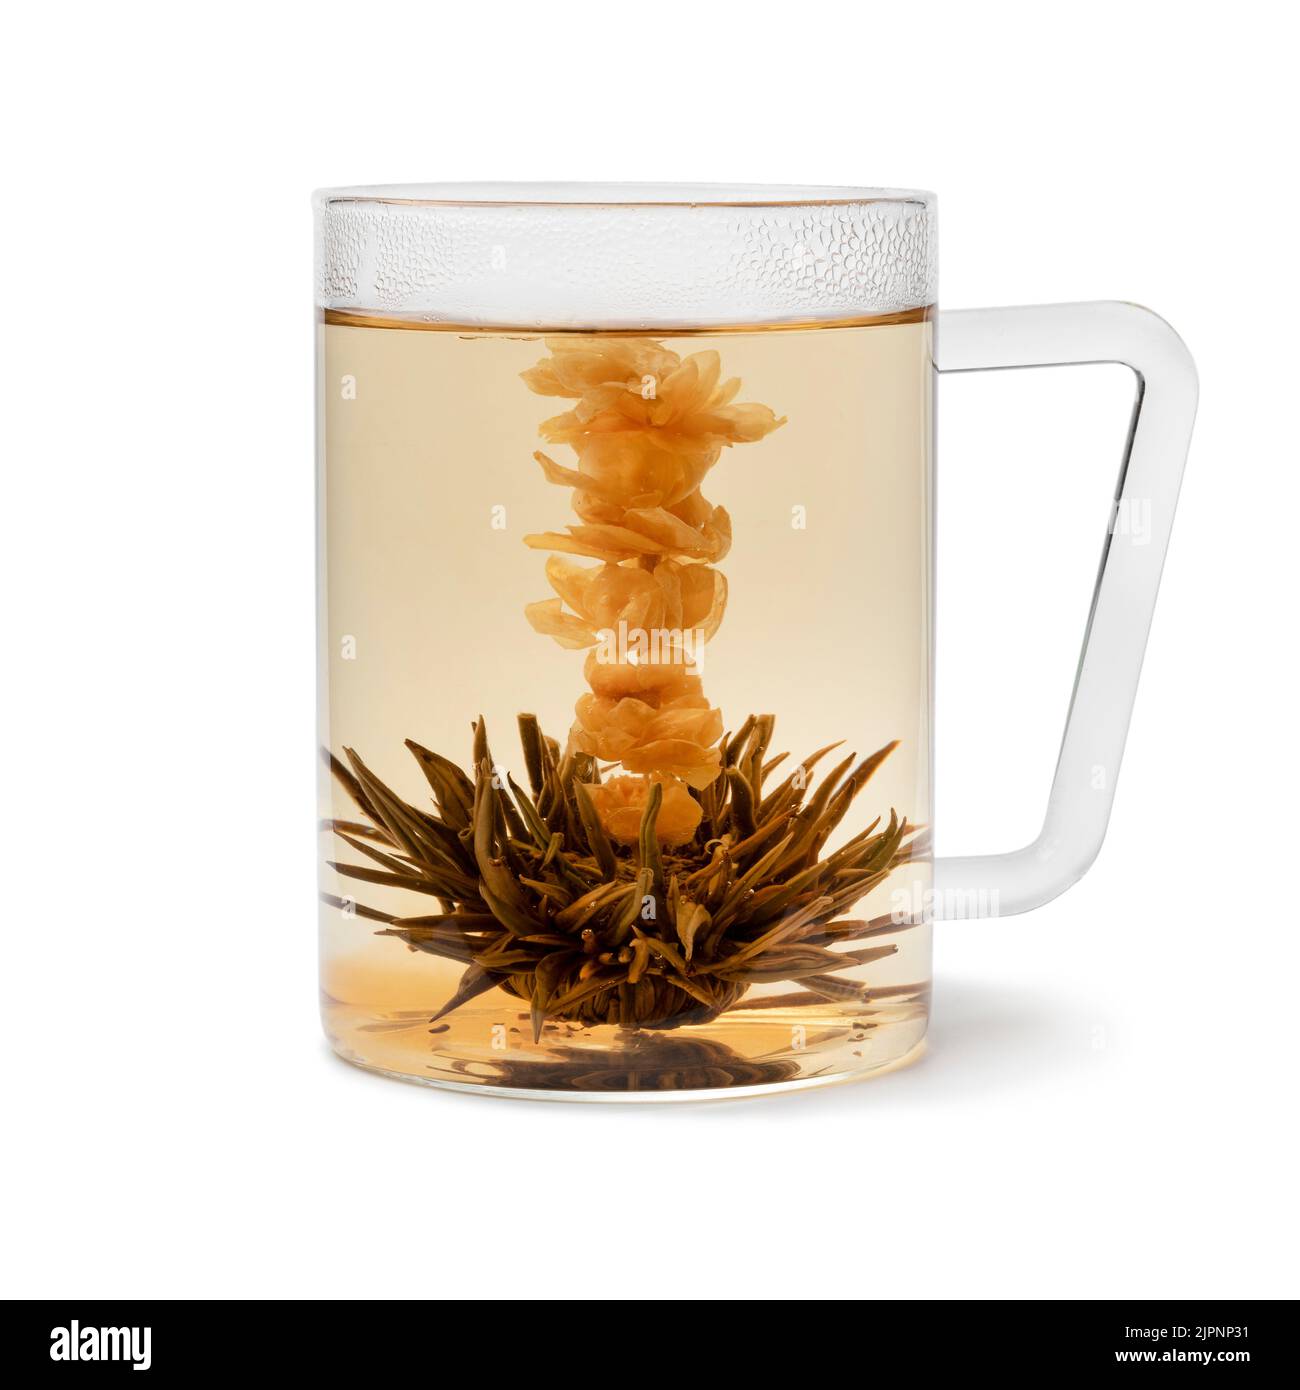 Tasse en verre avec une fleur de thé Jasmine artisanale traditionnelle séchée à l'asiatique et un thé isolé sur fond blanc Banque D'Images